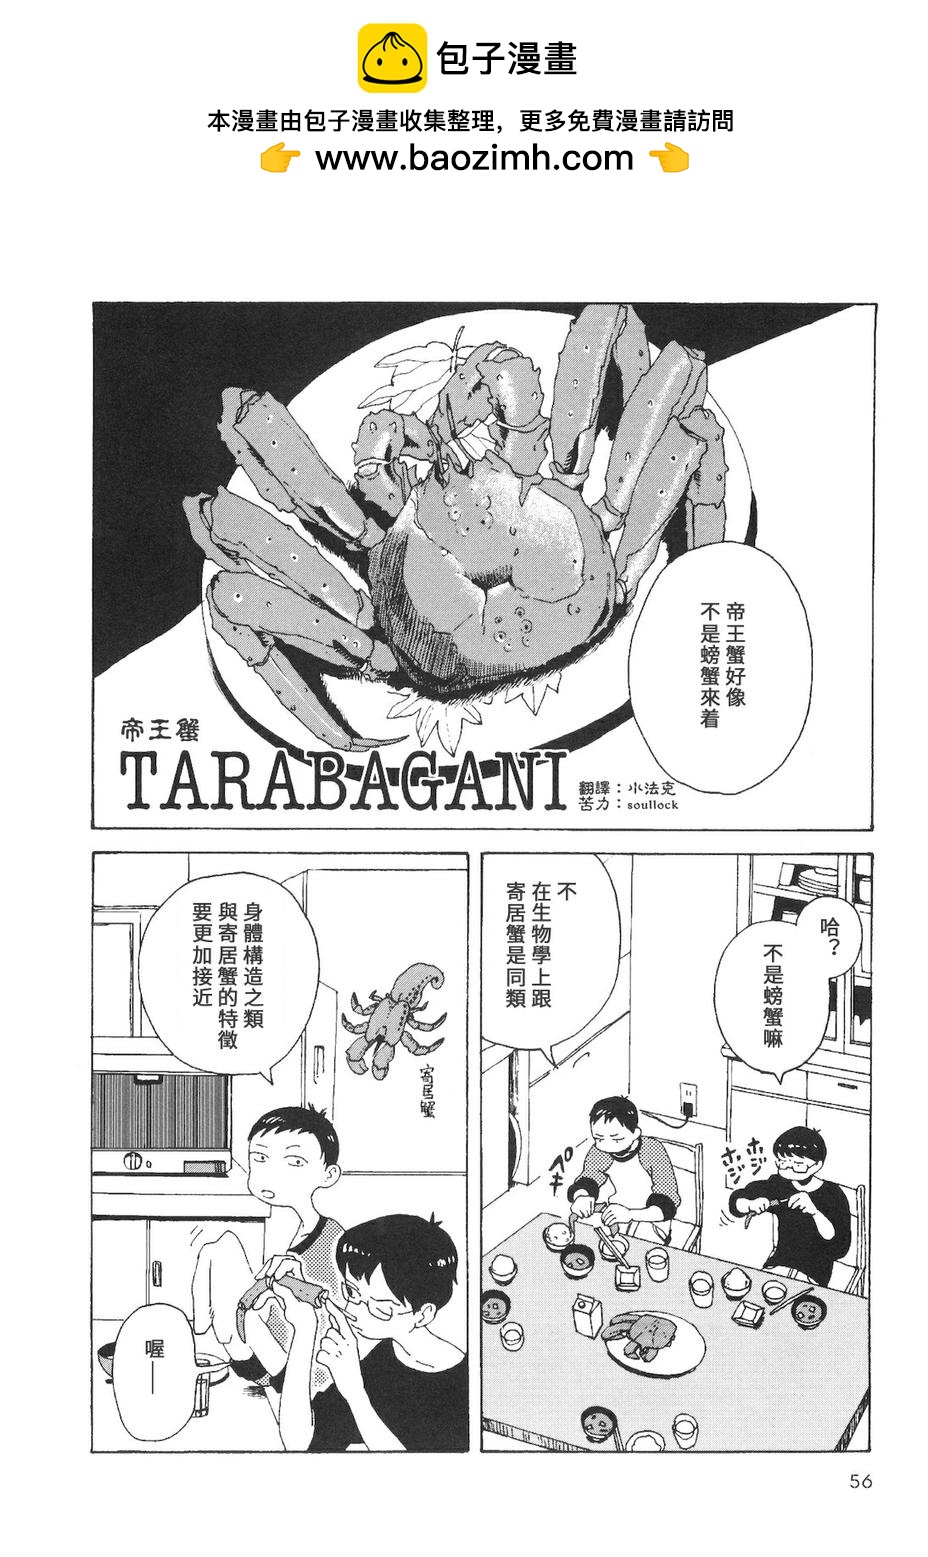 抽屜裡的溫室箱 - TARABAGANI帝王蟹 - 1